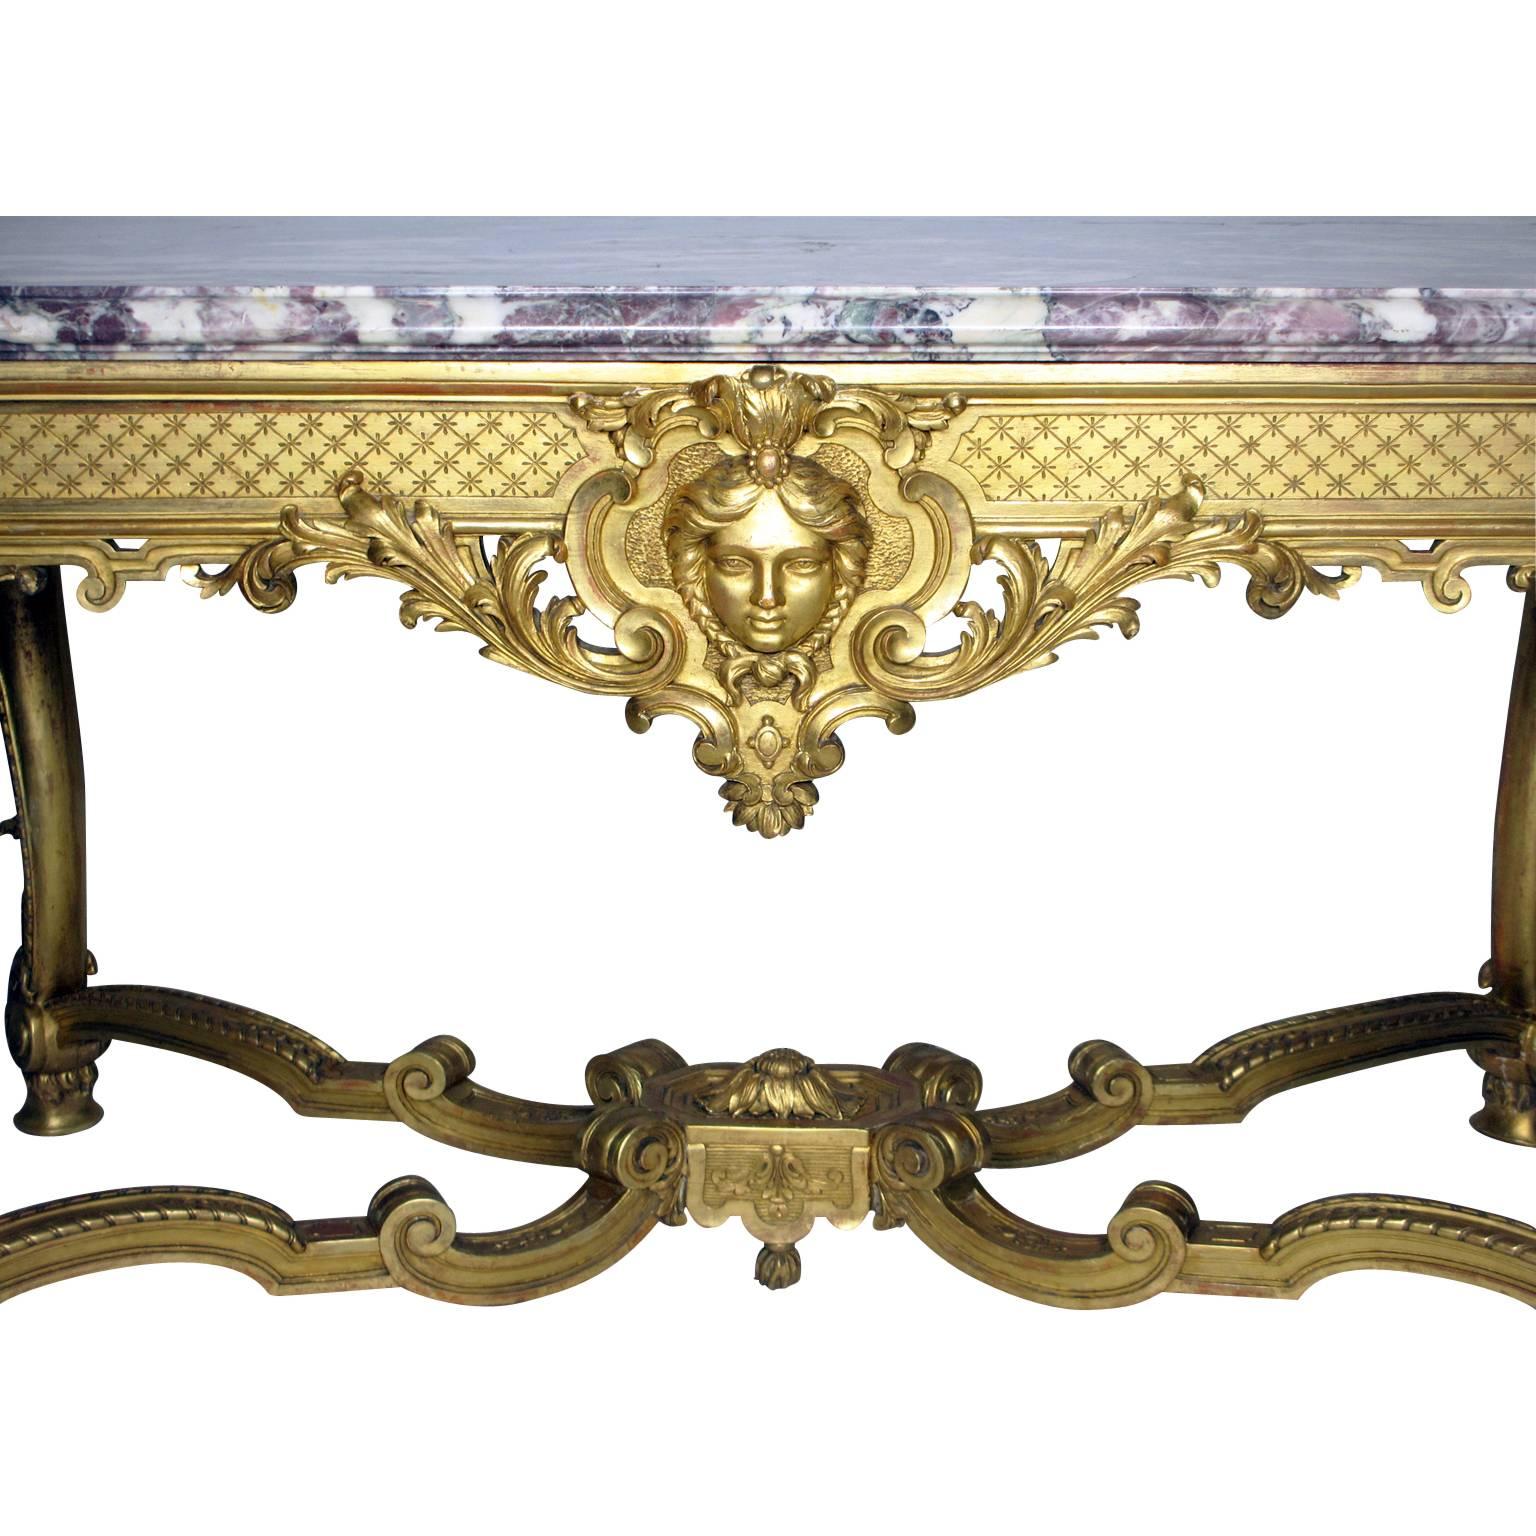 Très belle table de centre ou d'entrée en bois doré sculpté de style Louis XV du XIXe siècle, dotée d'un plateau en marbre Brêche violette. Le cadre rectangulaire comporte quatre pieds cabriole à volutes se terminant par des pieds en sabot et reliés